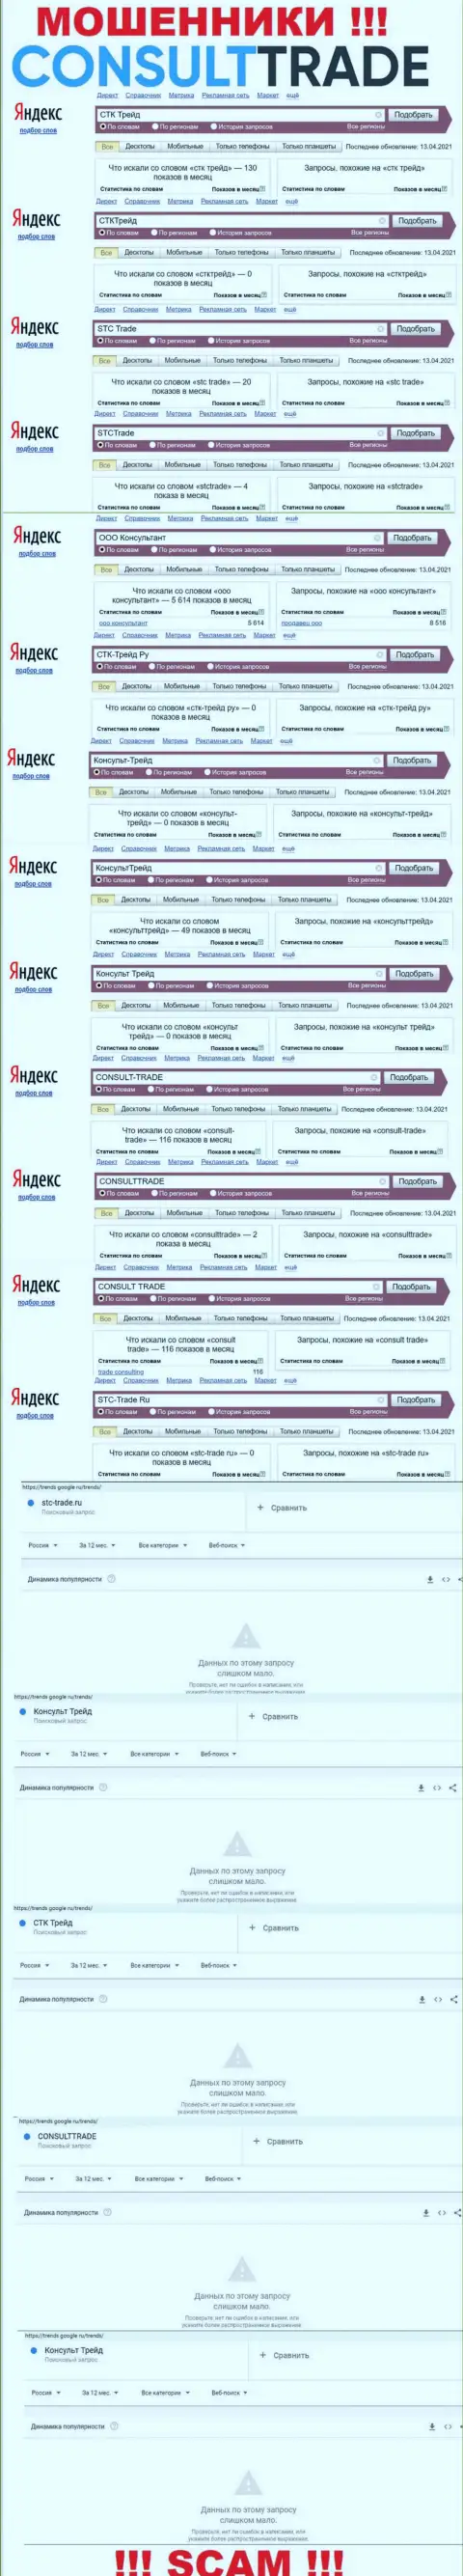 Скрин результатов поисковых запросов по незаконно действующей организации CONSULT TRADE